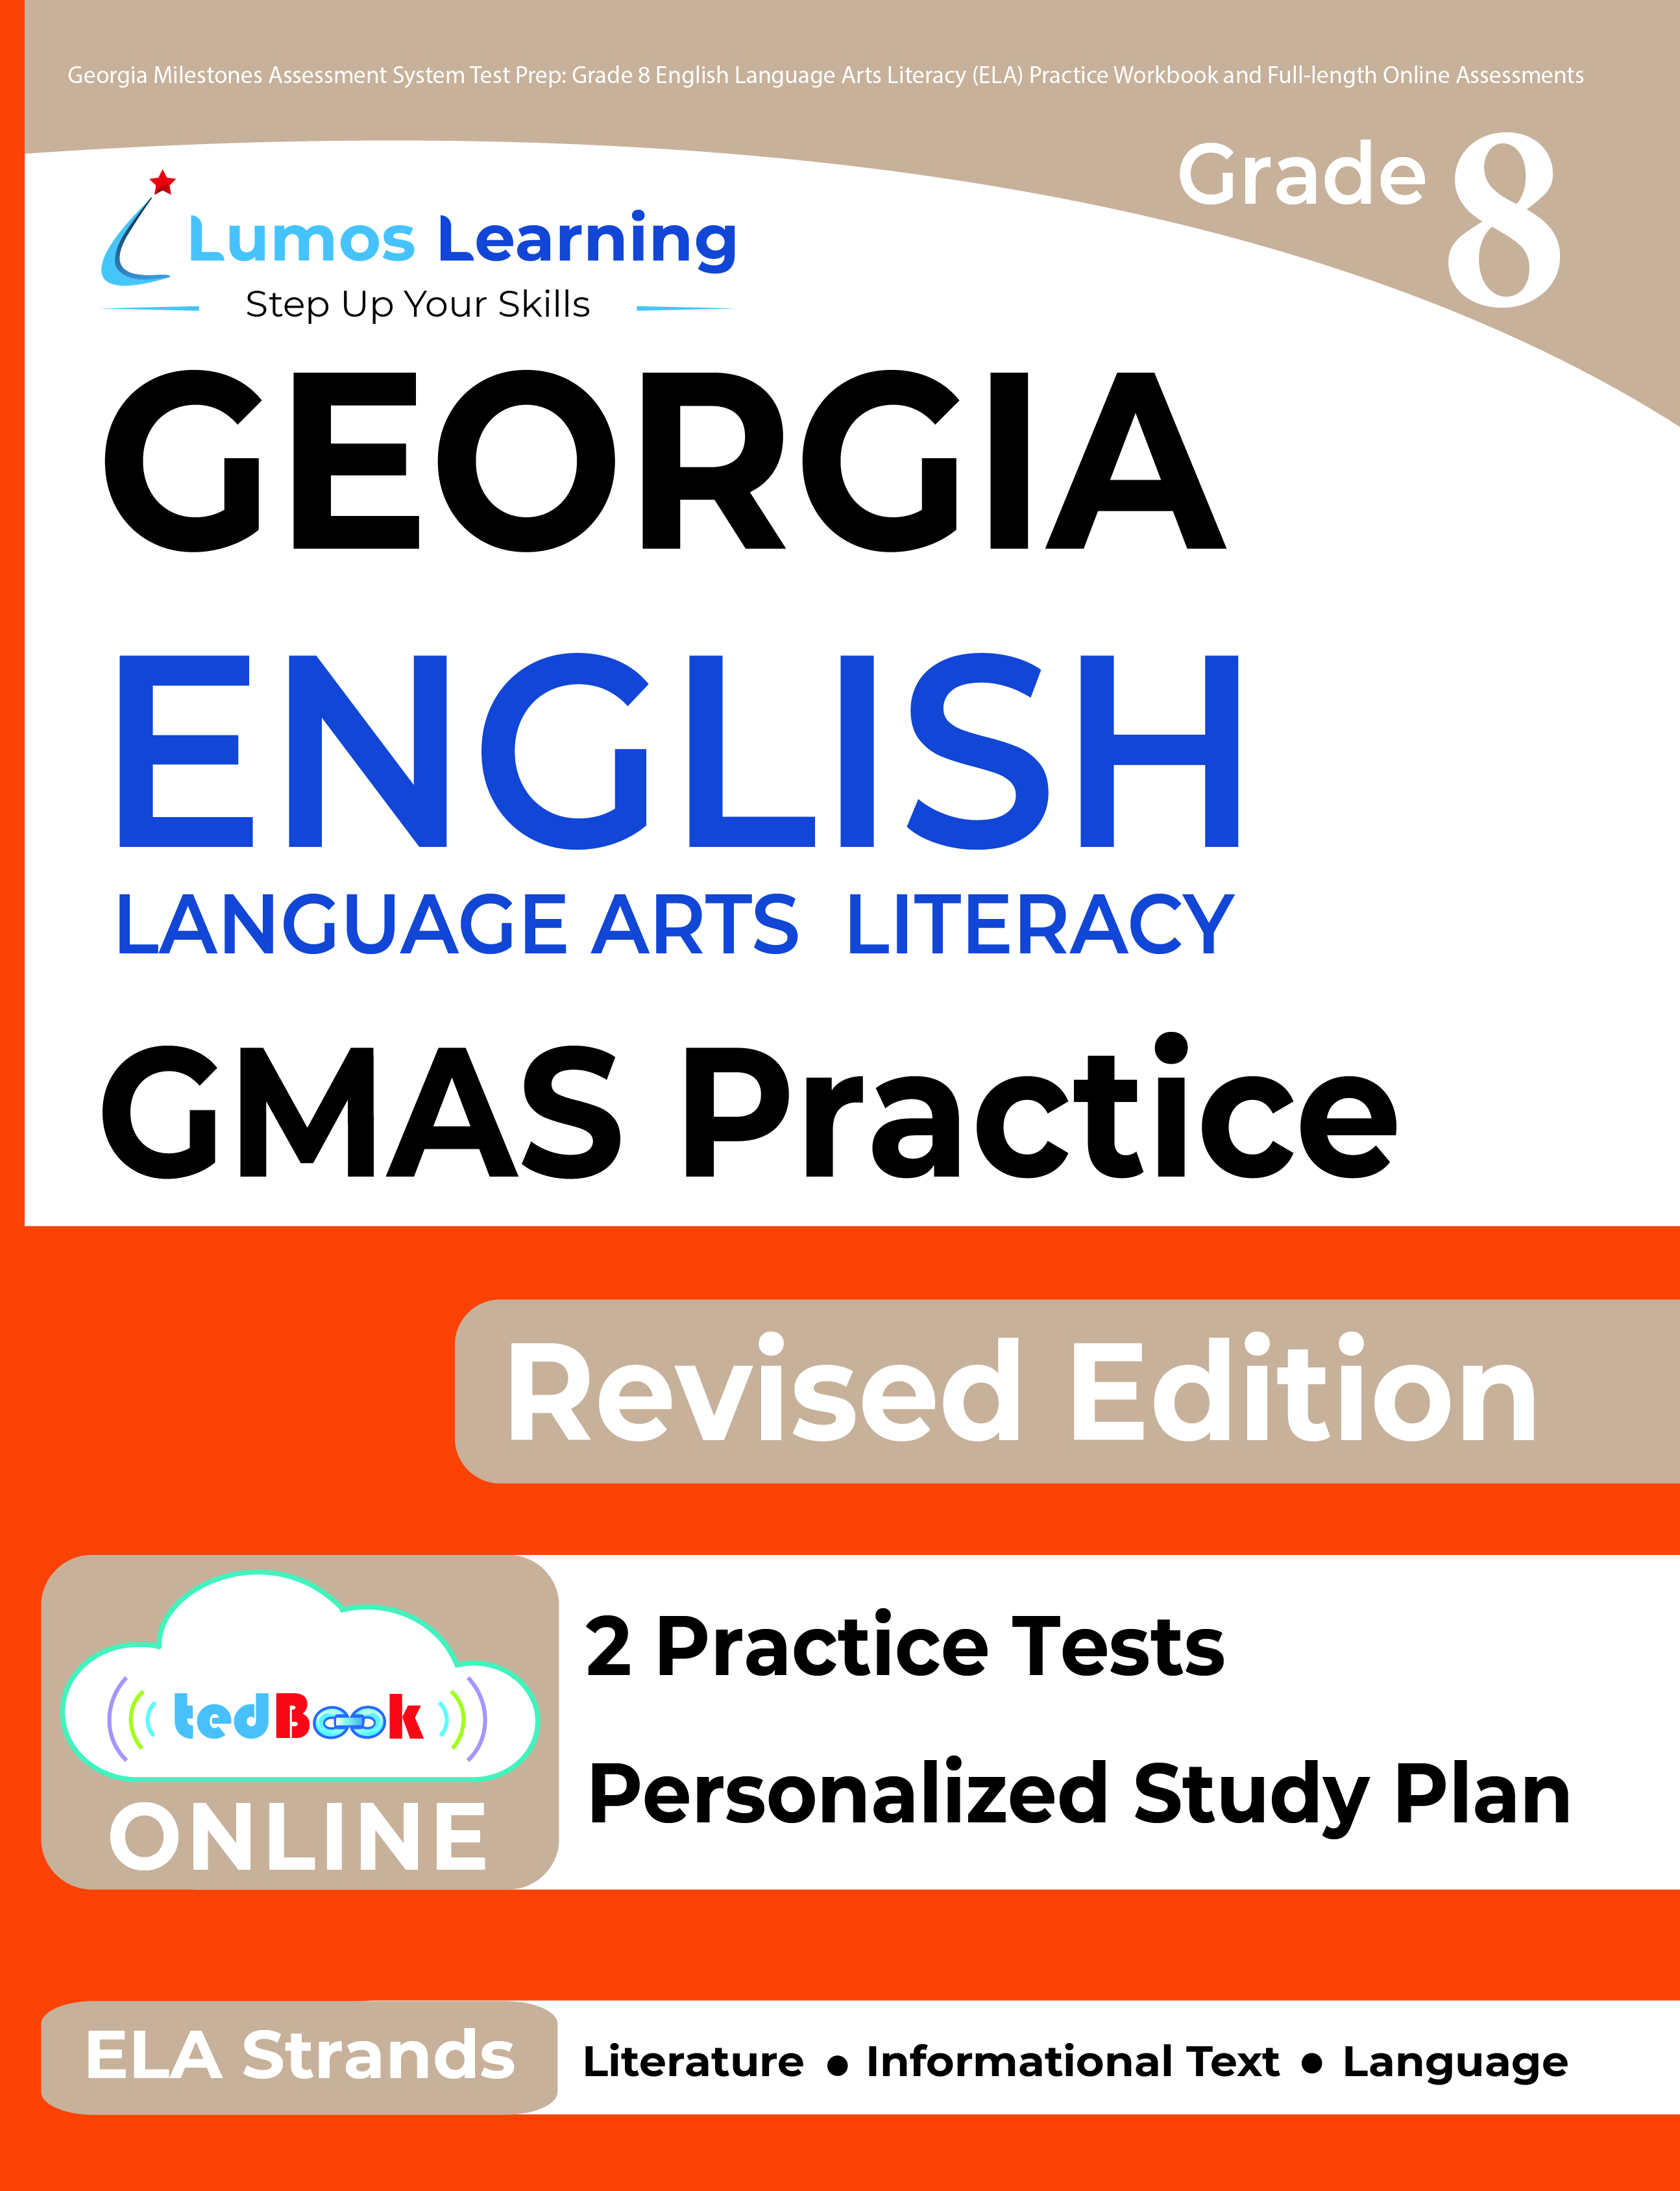 Grade 8 ELA gmas test prep workbooks